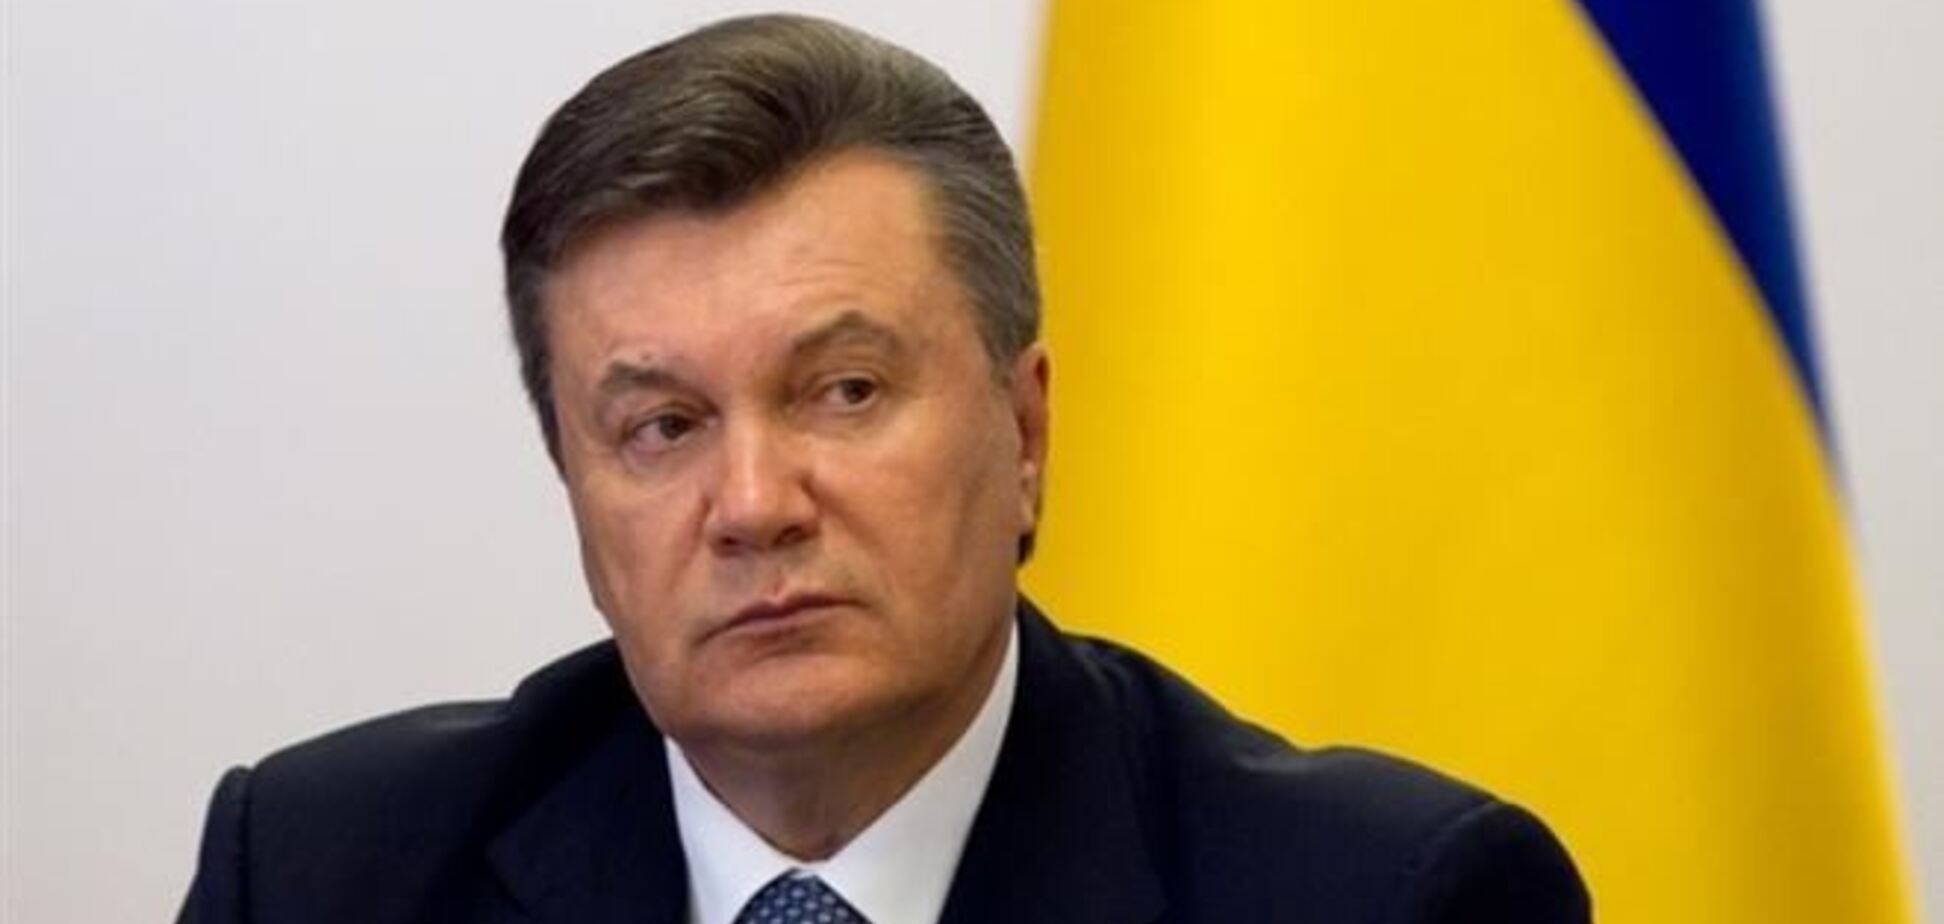 От Януковича ждут 'последнего слова' на саммите в Вильнюсе